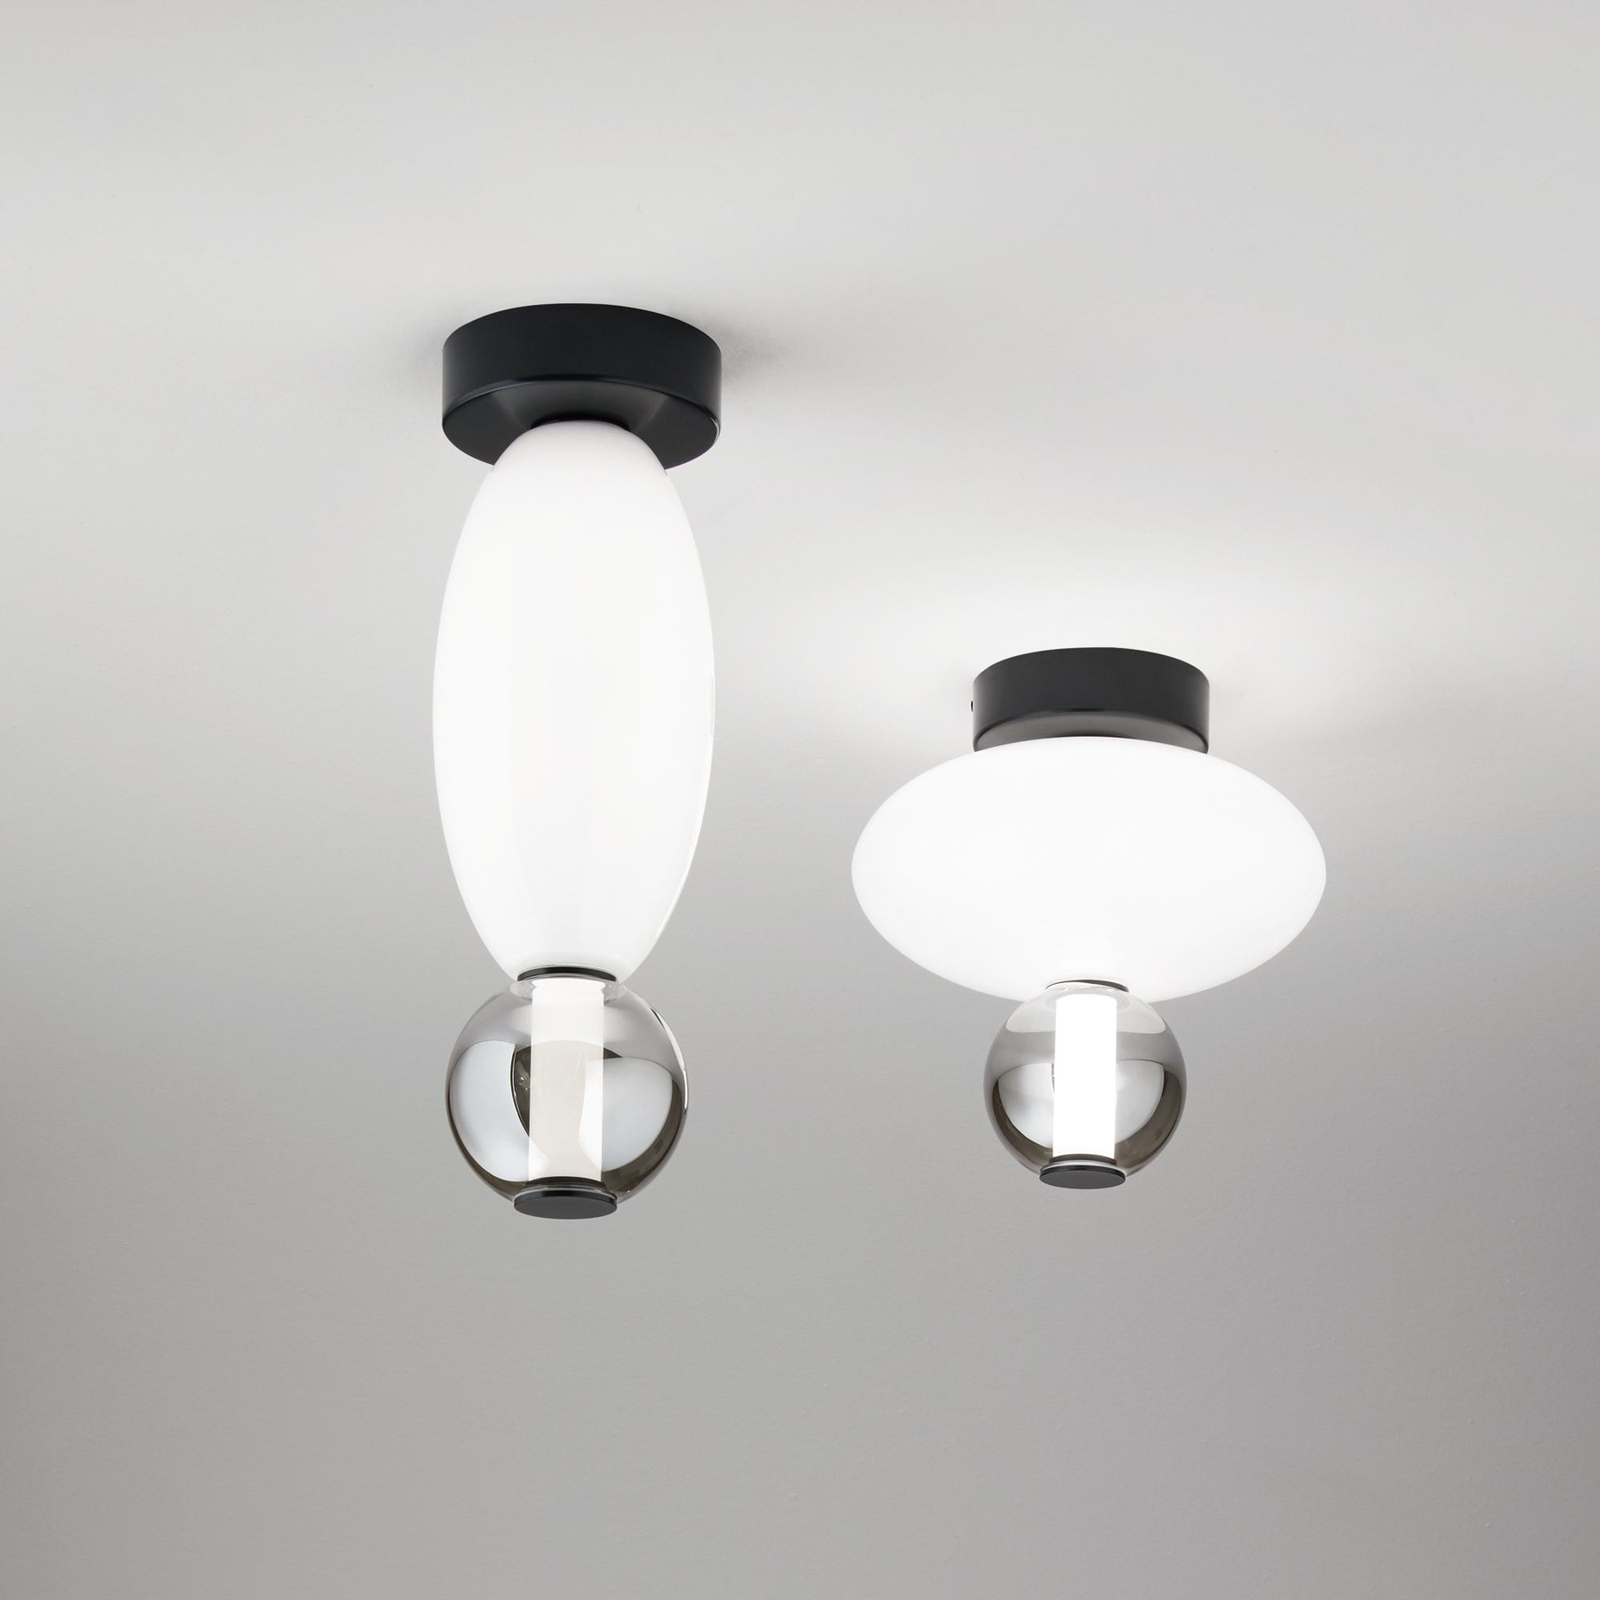 Stropní svítidlo Ideal Lux LED Lumiere-1, opálové/šedé sklo, černé